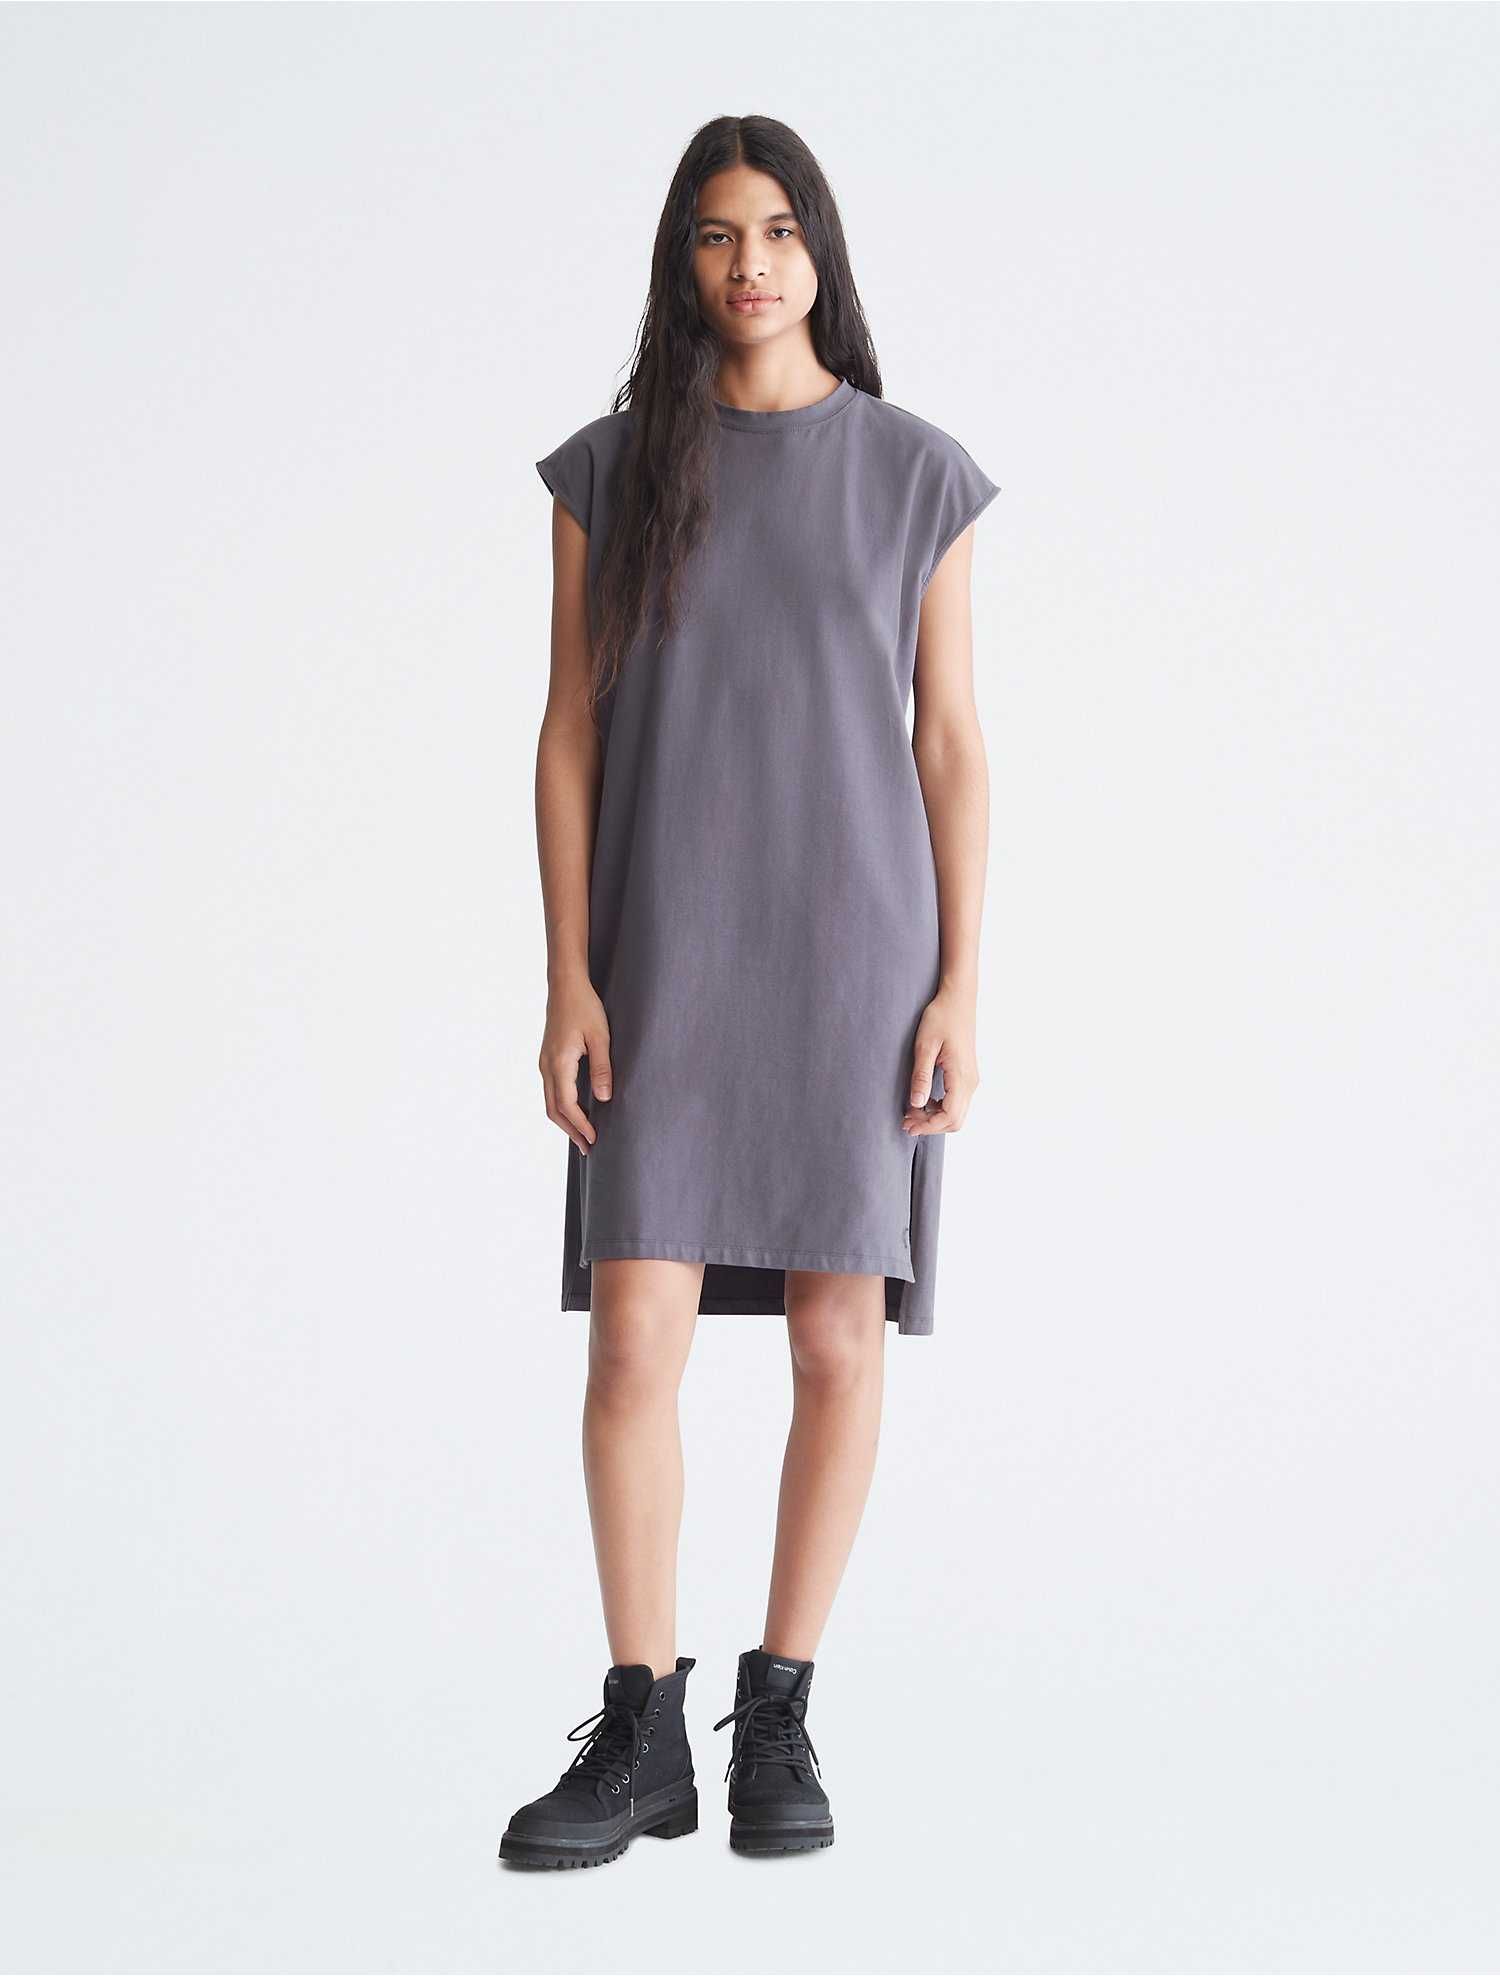 Женское платье calvin klein (ck Solid T-Shirt Dress) c америки S,M